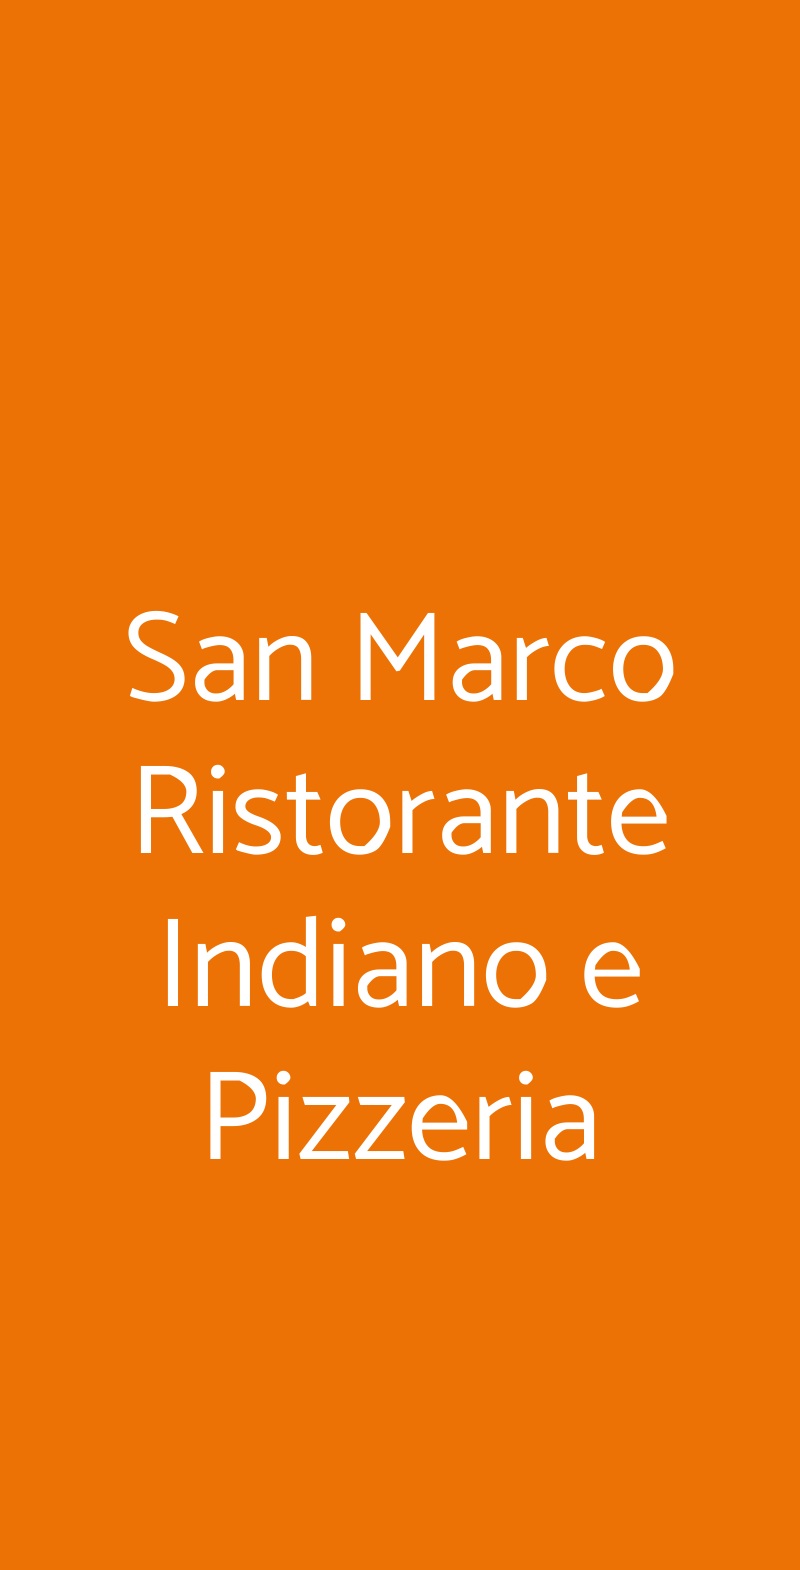 San Marco Ristorante Indiano e Pizzeria Castelfranco Emilia menù 1 pagina